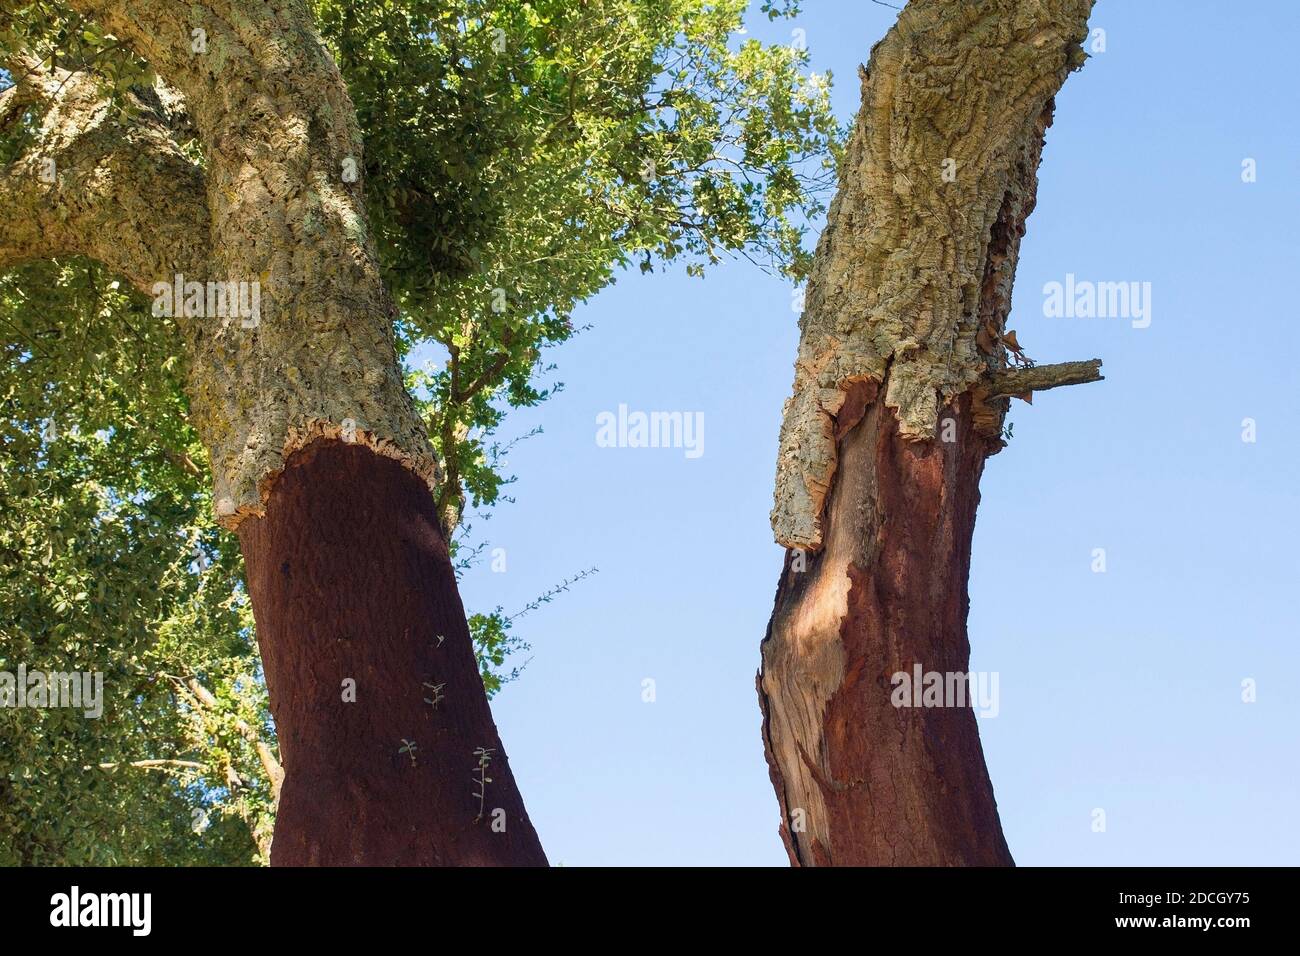 Korkeichen, Quercus Suber, wächst bei Murlo in der Provinz Siena, Toskana, Italien. Ein Teil der Rinde wurde geerntet Stockfoto